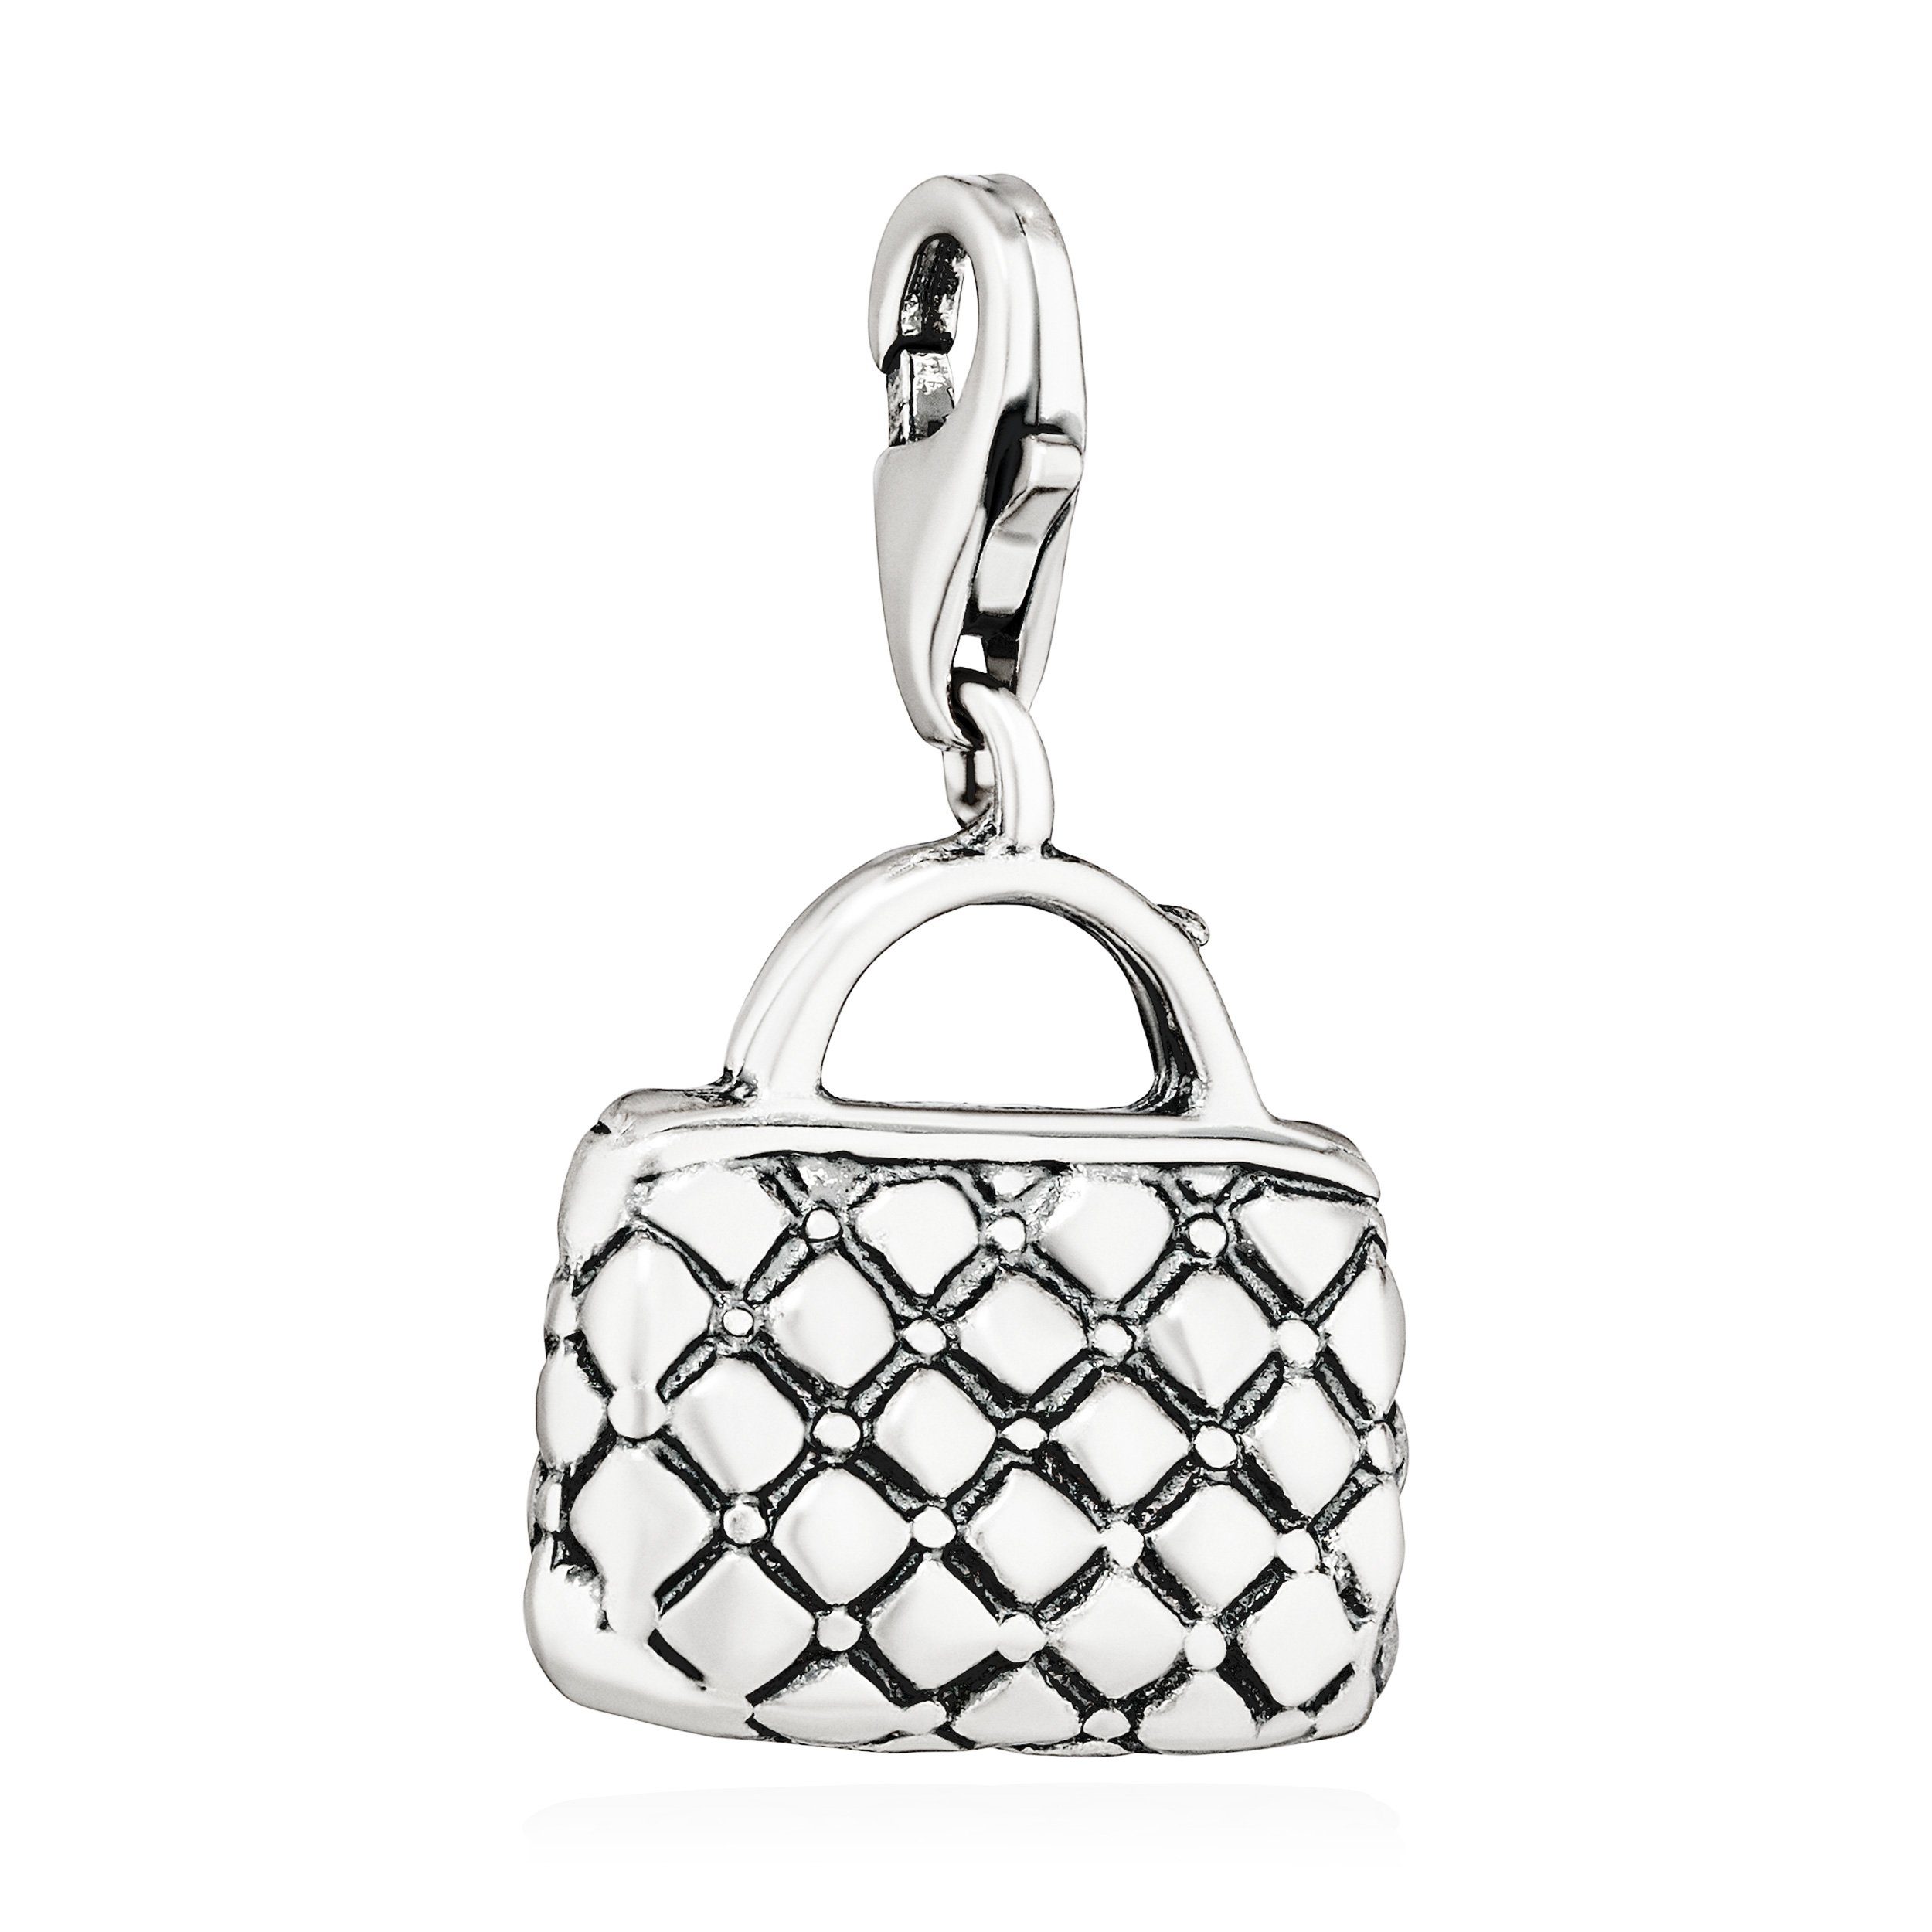 Damen Charm-Anhänger Silb Silber antik Kettenanhänger 925 Shopping Handtasche 16x14mm NKlaus